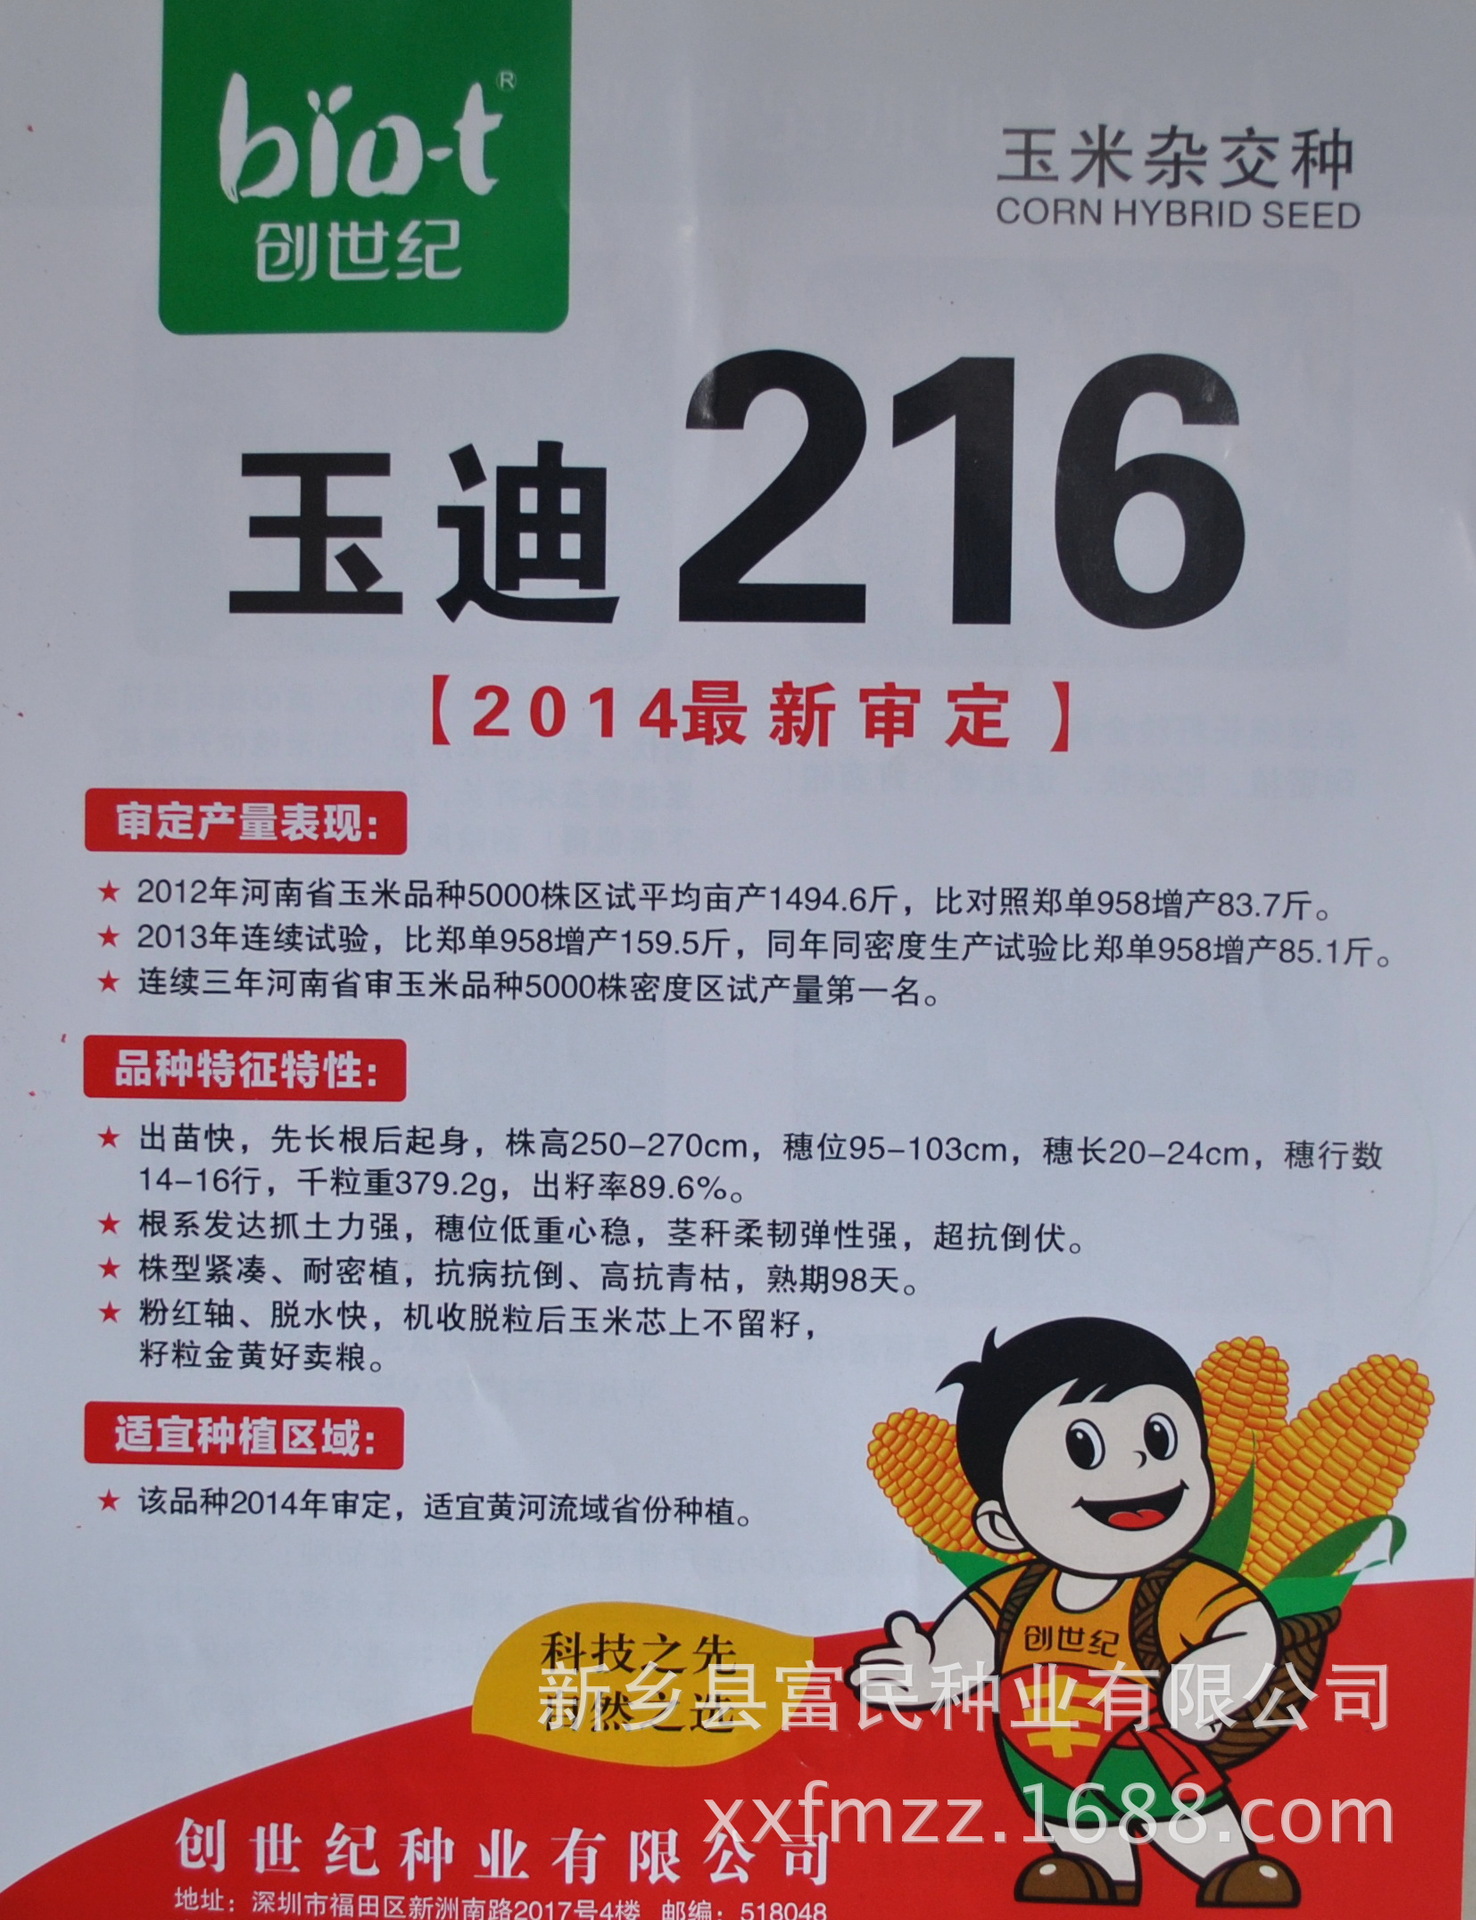 批发种子2014年河南最新审定玉米品种 玉迪216 数量有限 预订优先